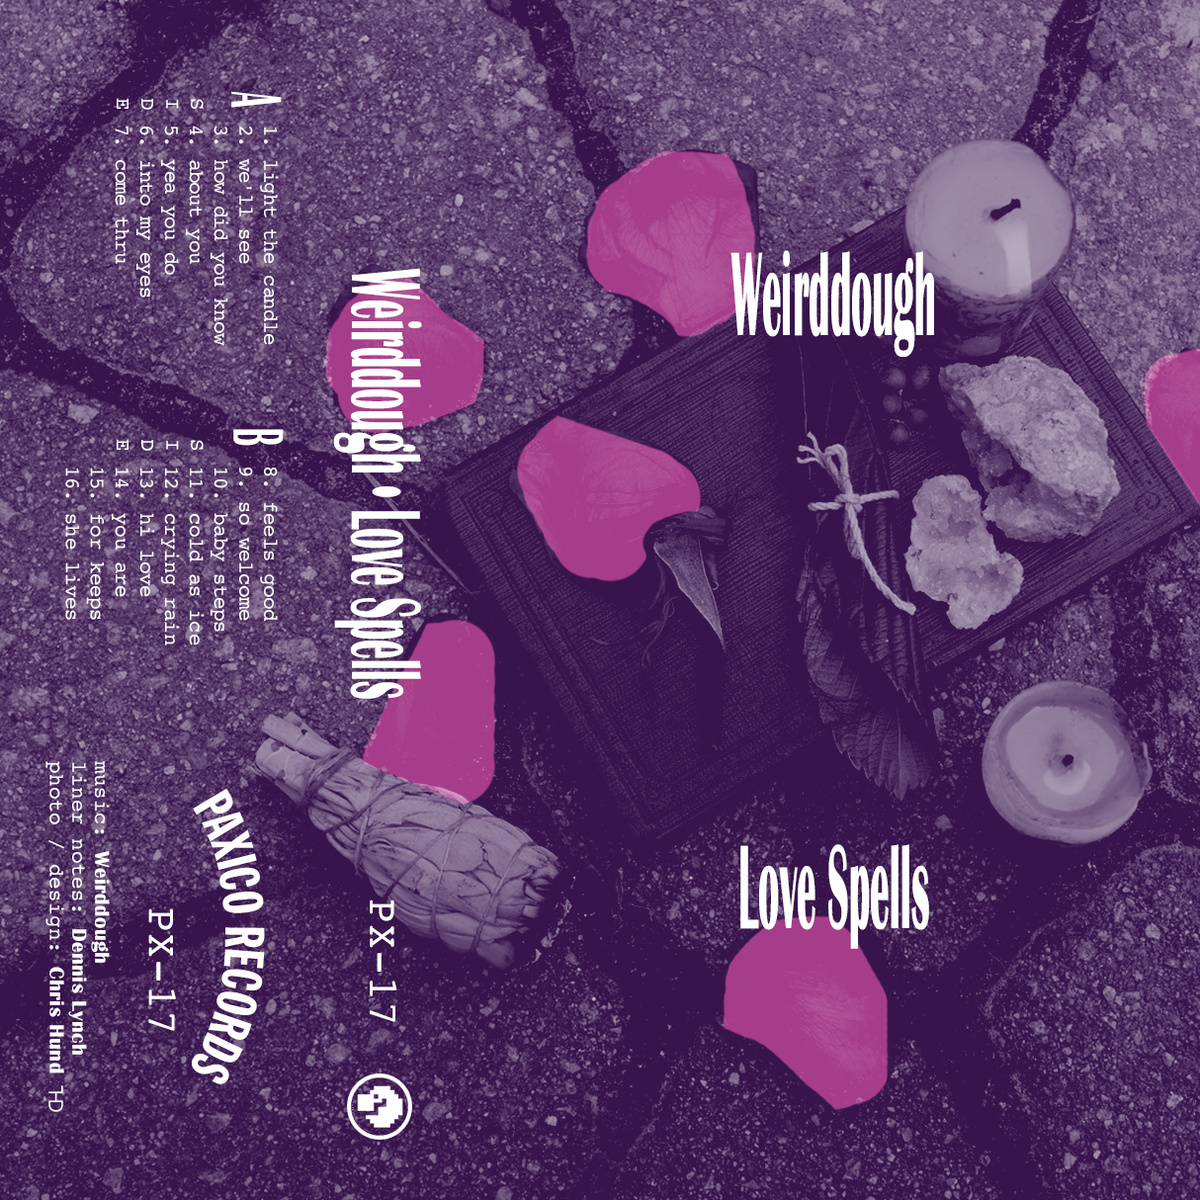 Cassette: Weirddough – Love Spells